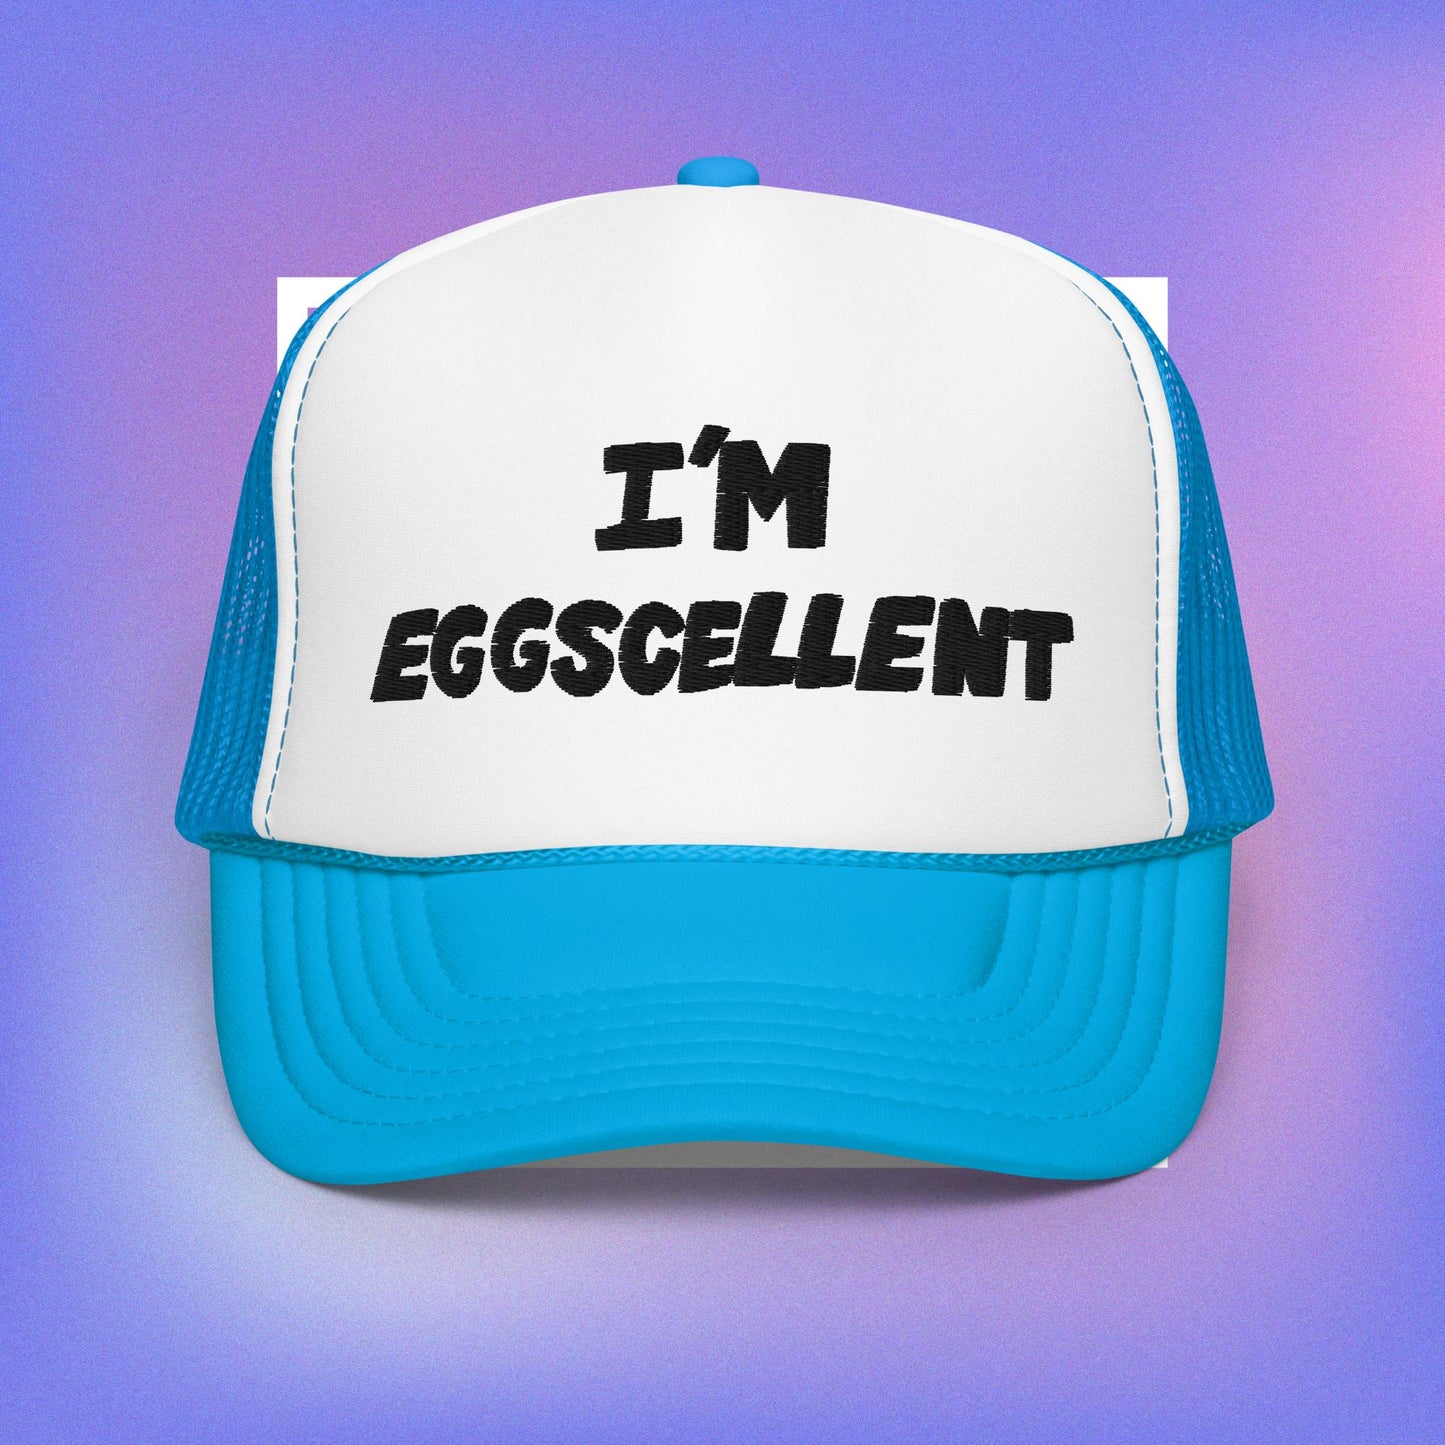 "I'm Eggscellent" Trucker Hat